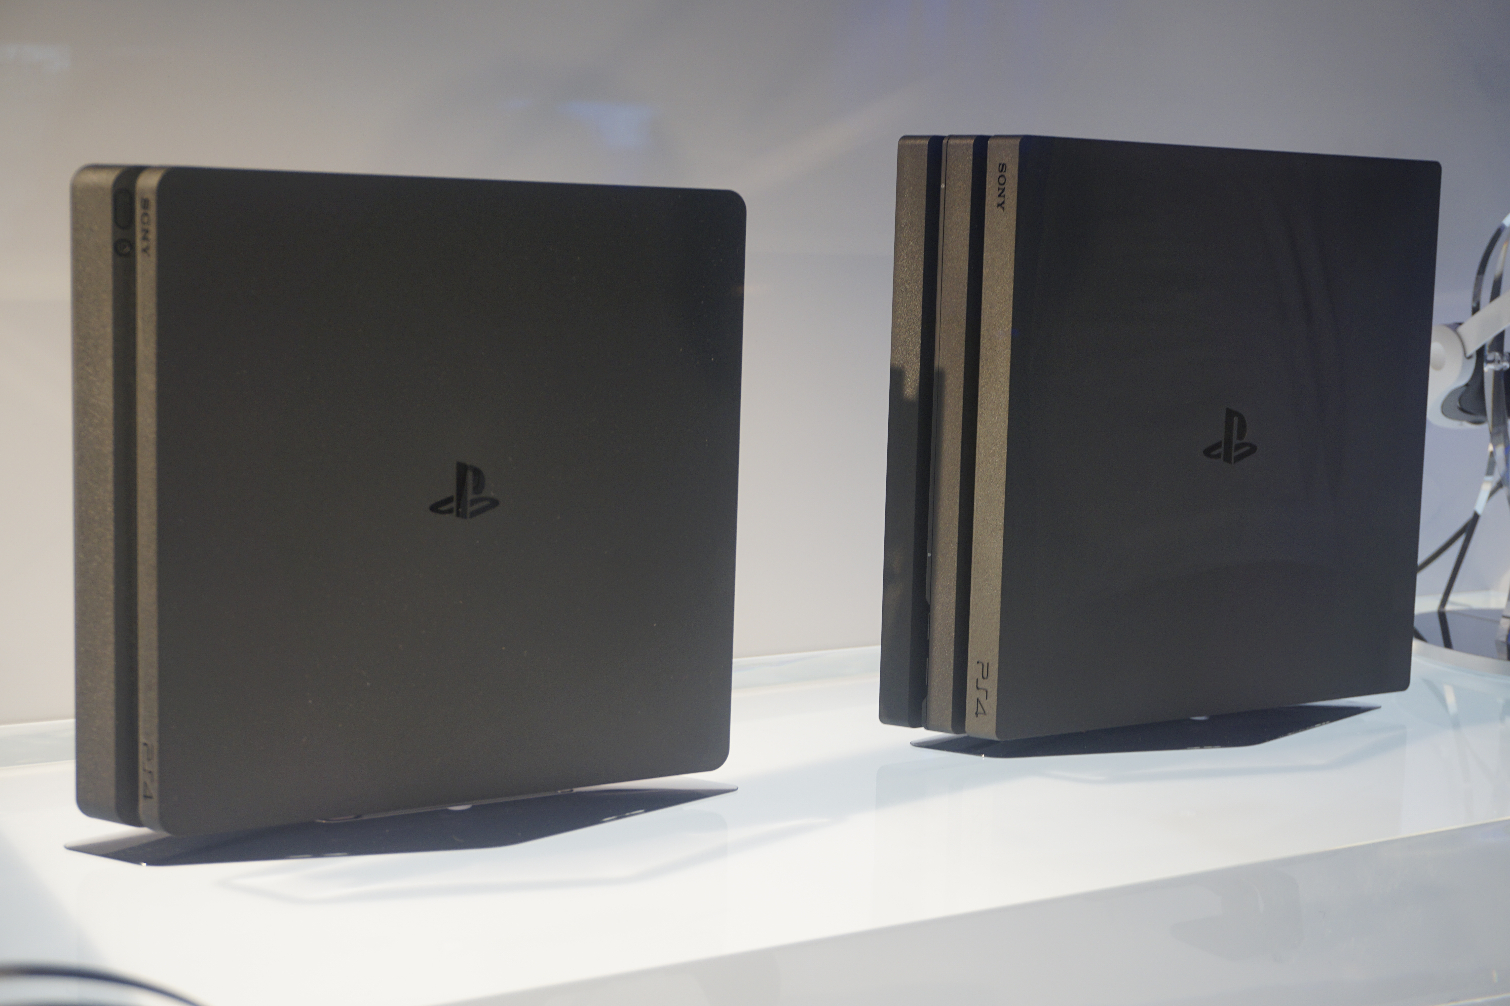 Kan ikke læse eller skrive Ampere Hændelse, begivenhed PS4 Pro vs. PS4 Slim: Which PlayStation is Right For You? | Tom's Guide